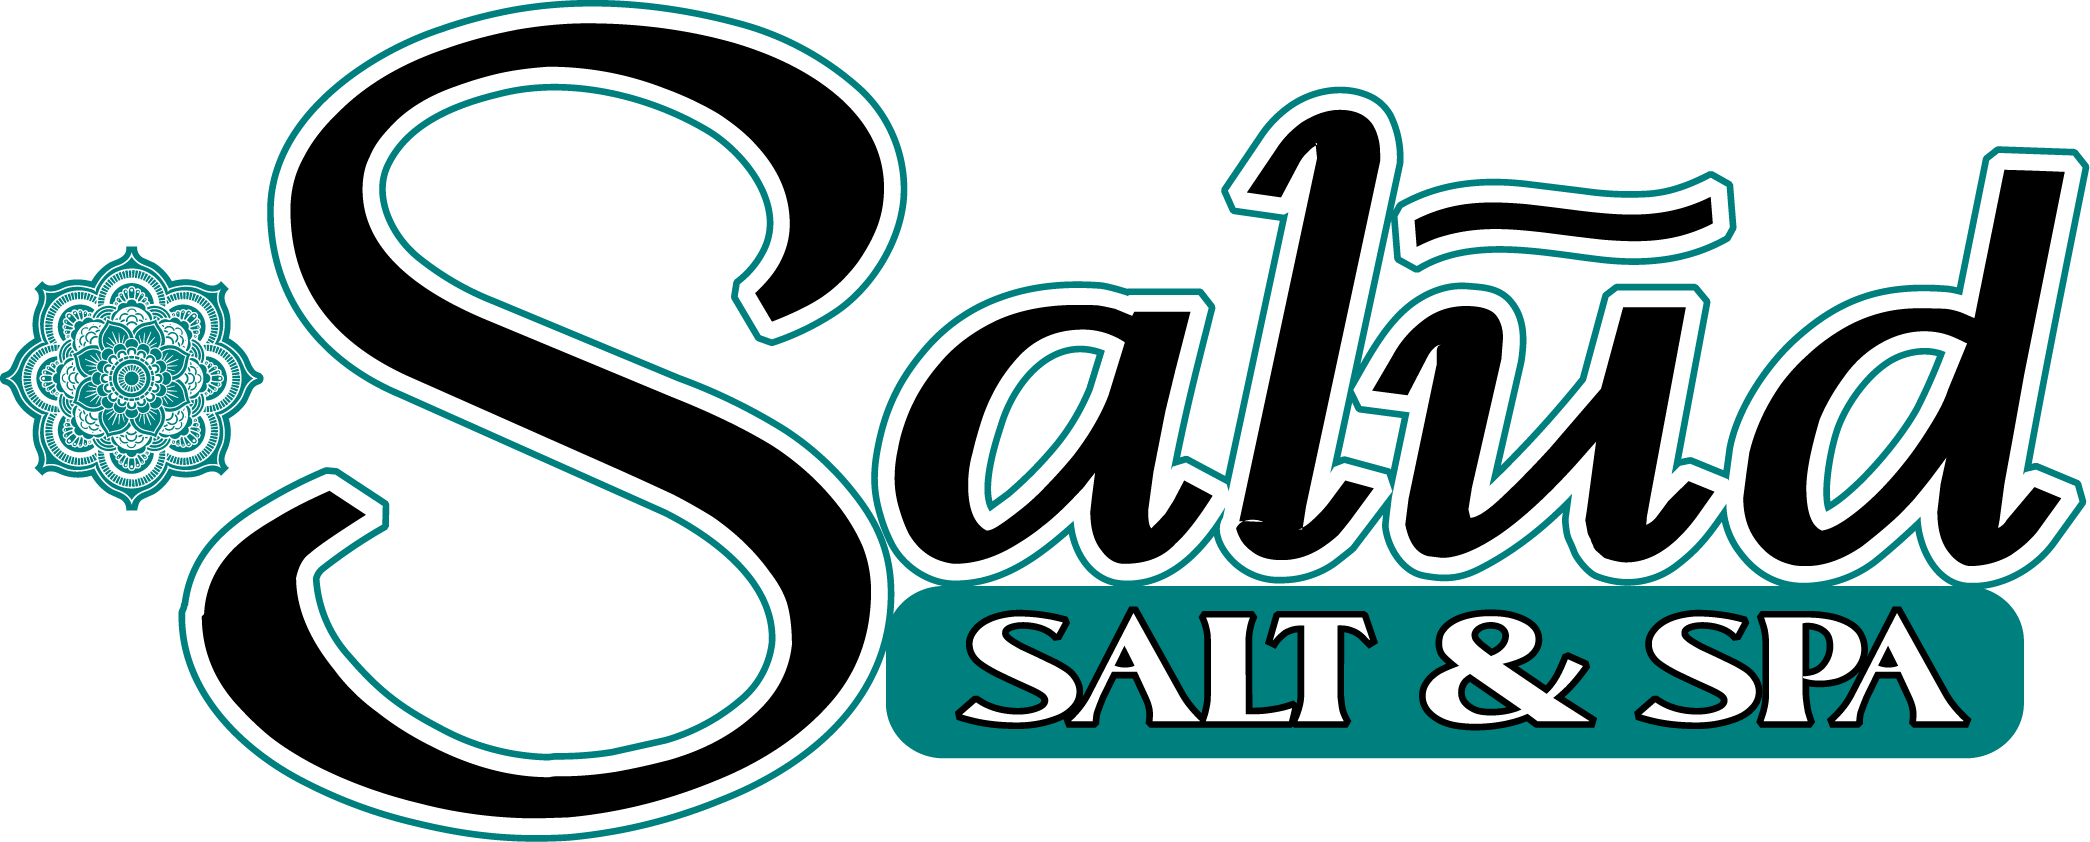 Salud Salt & Spa